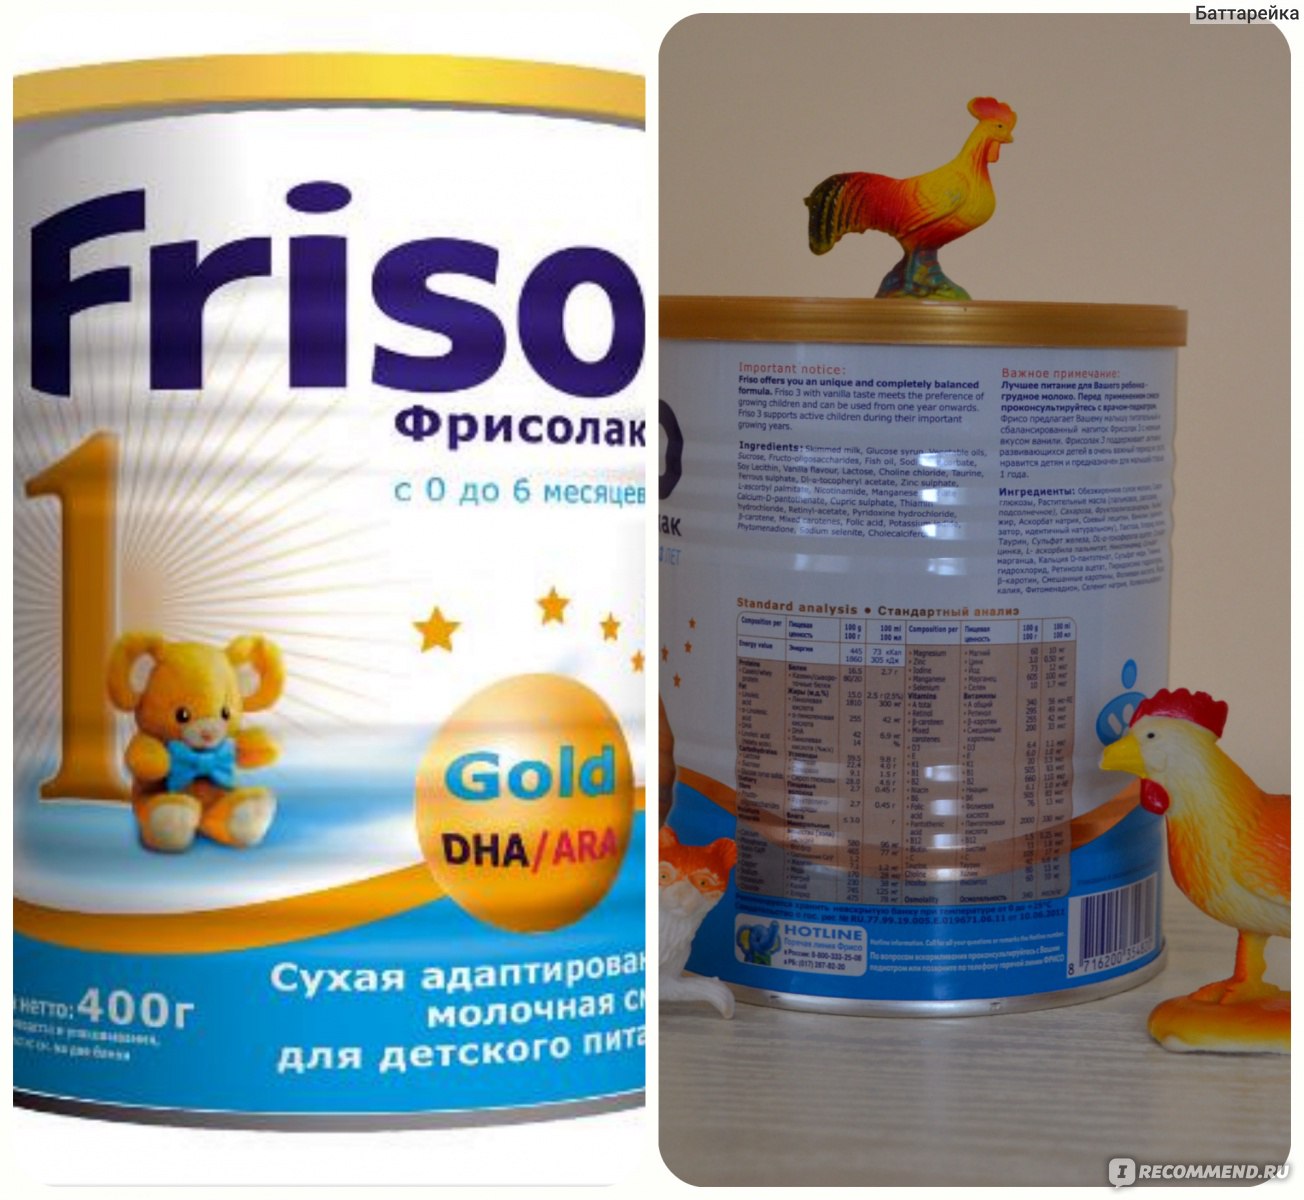 Смеси фрисо (friso) и фрисолак: состав и виды (голд, пеп) детского питания